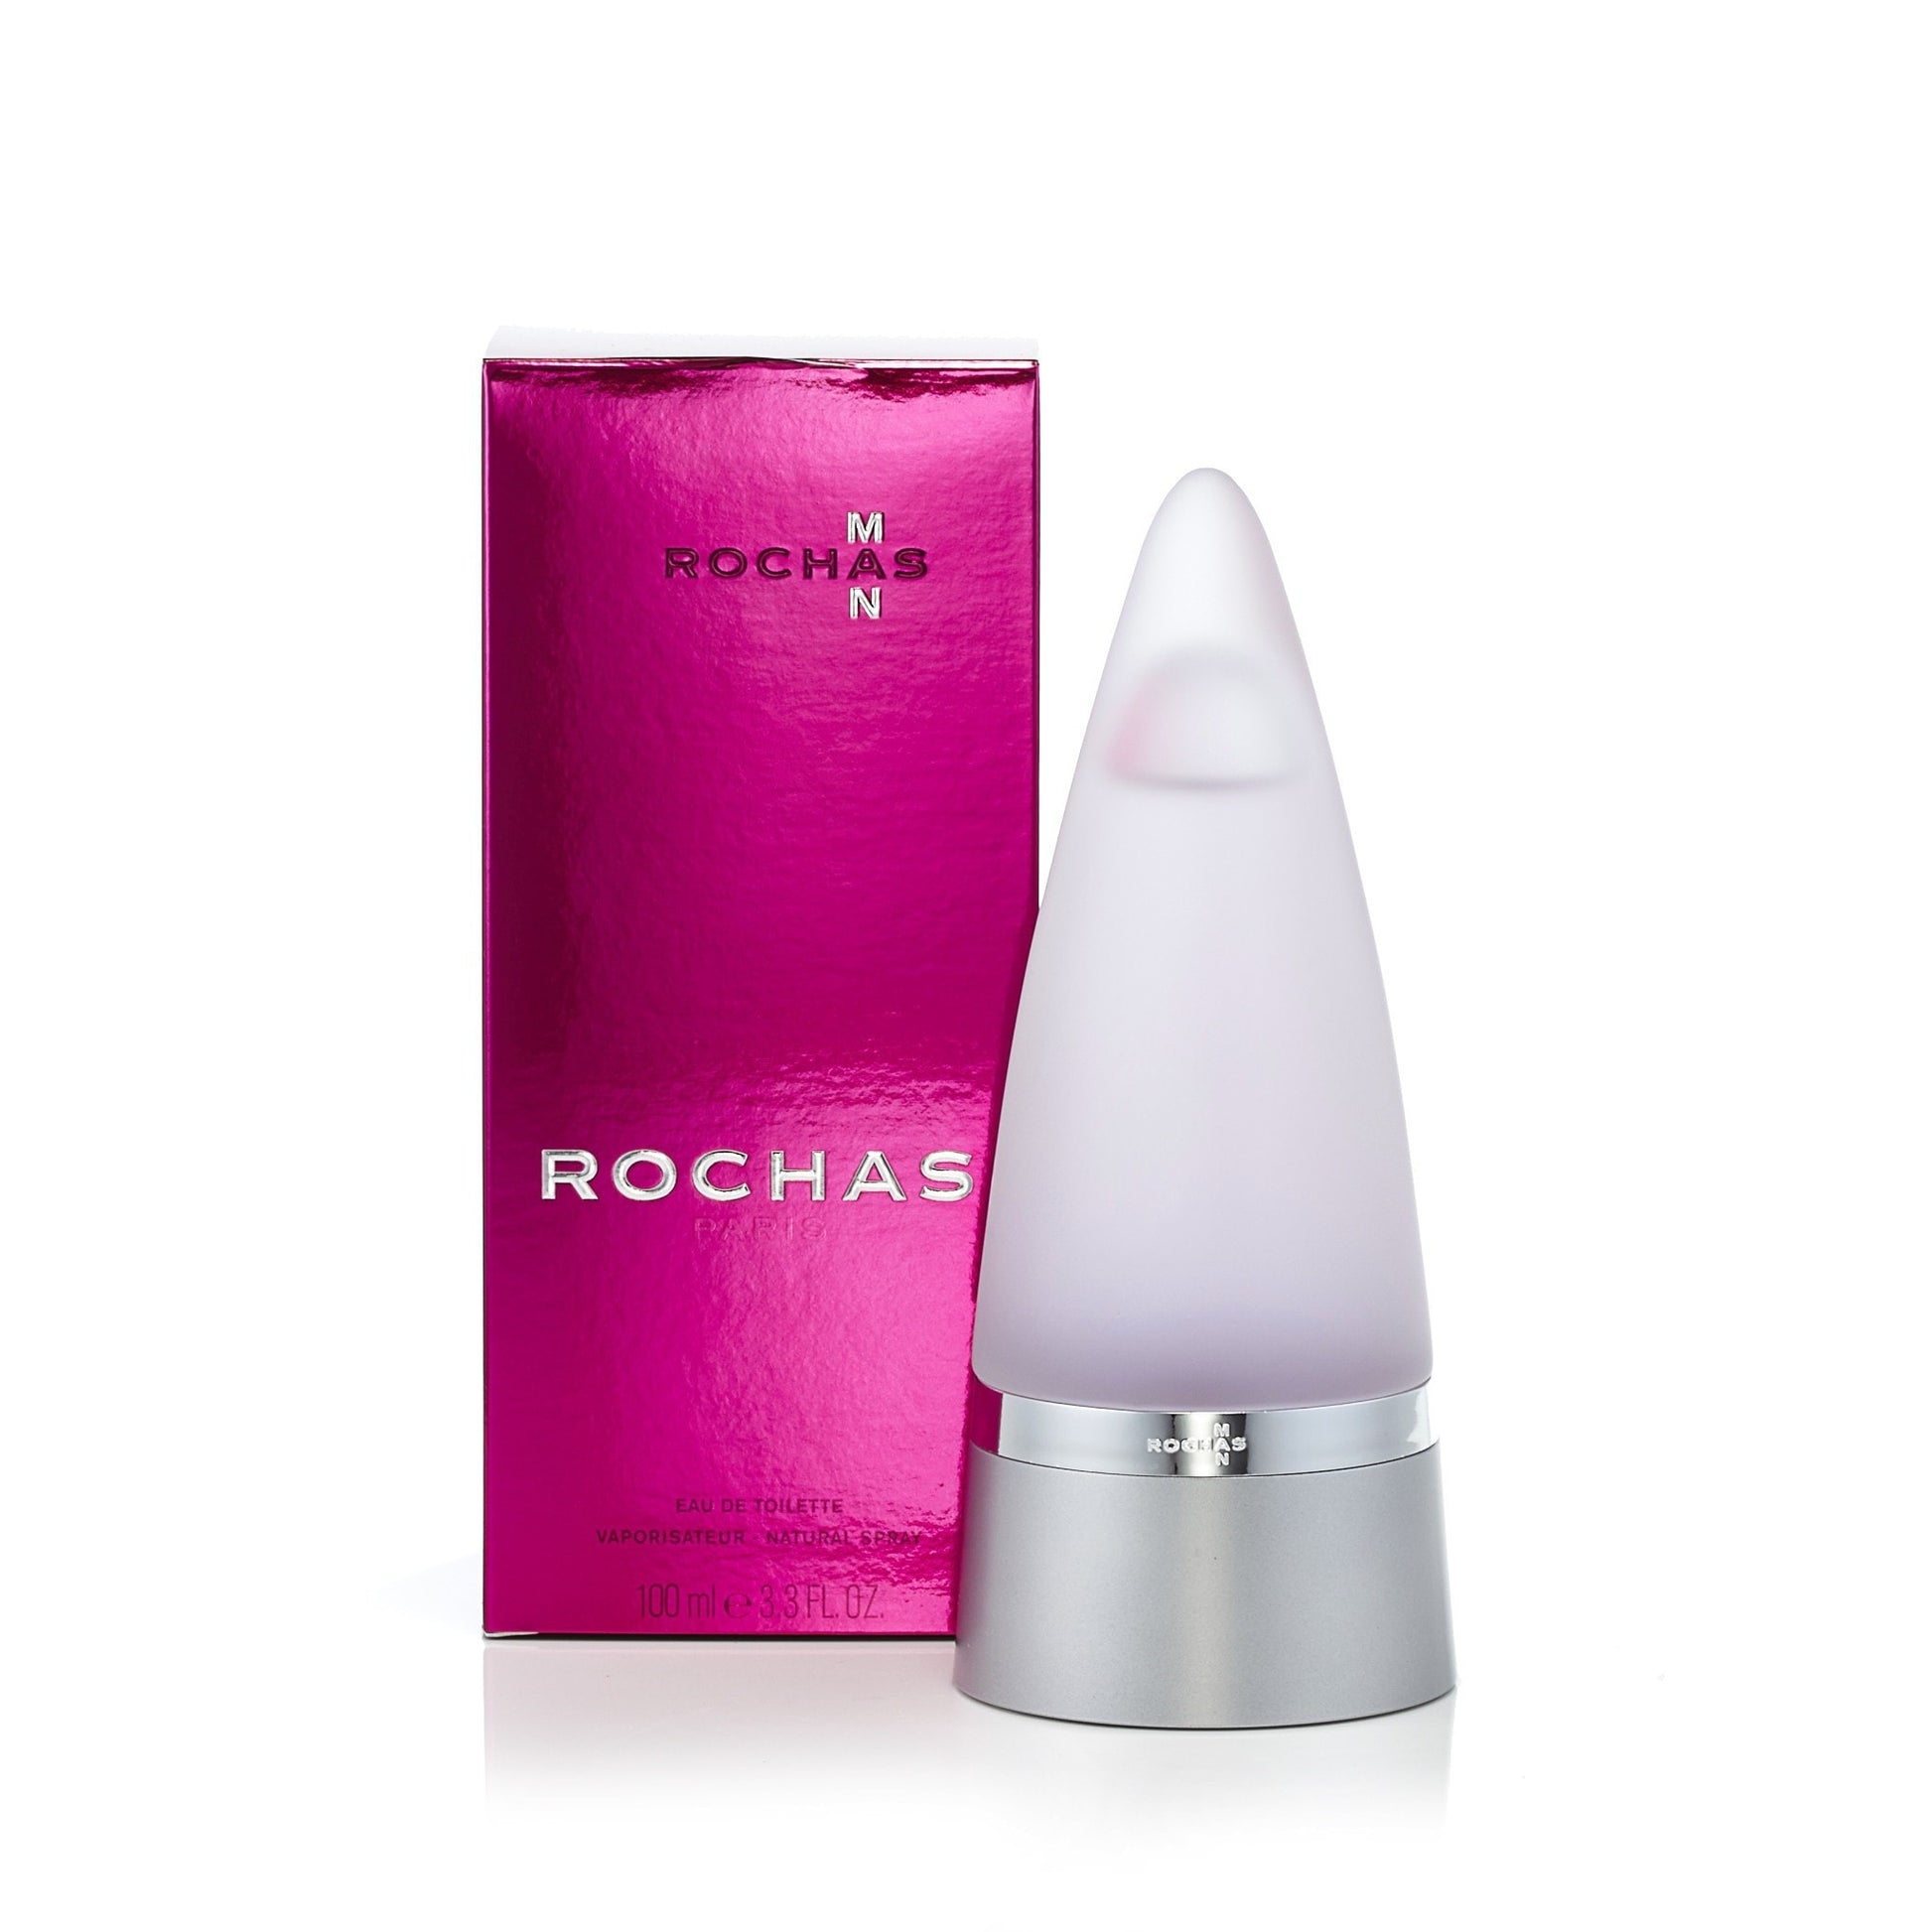 Rochas Man Eau de Toilette Spray for Men by Rochas 3.4 oz. Click to open in modal